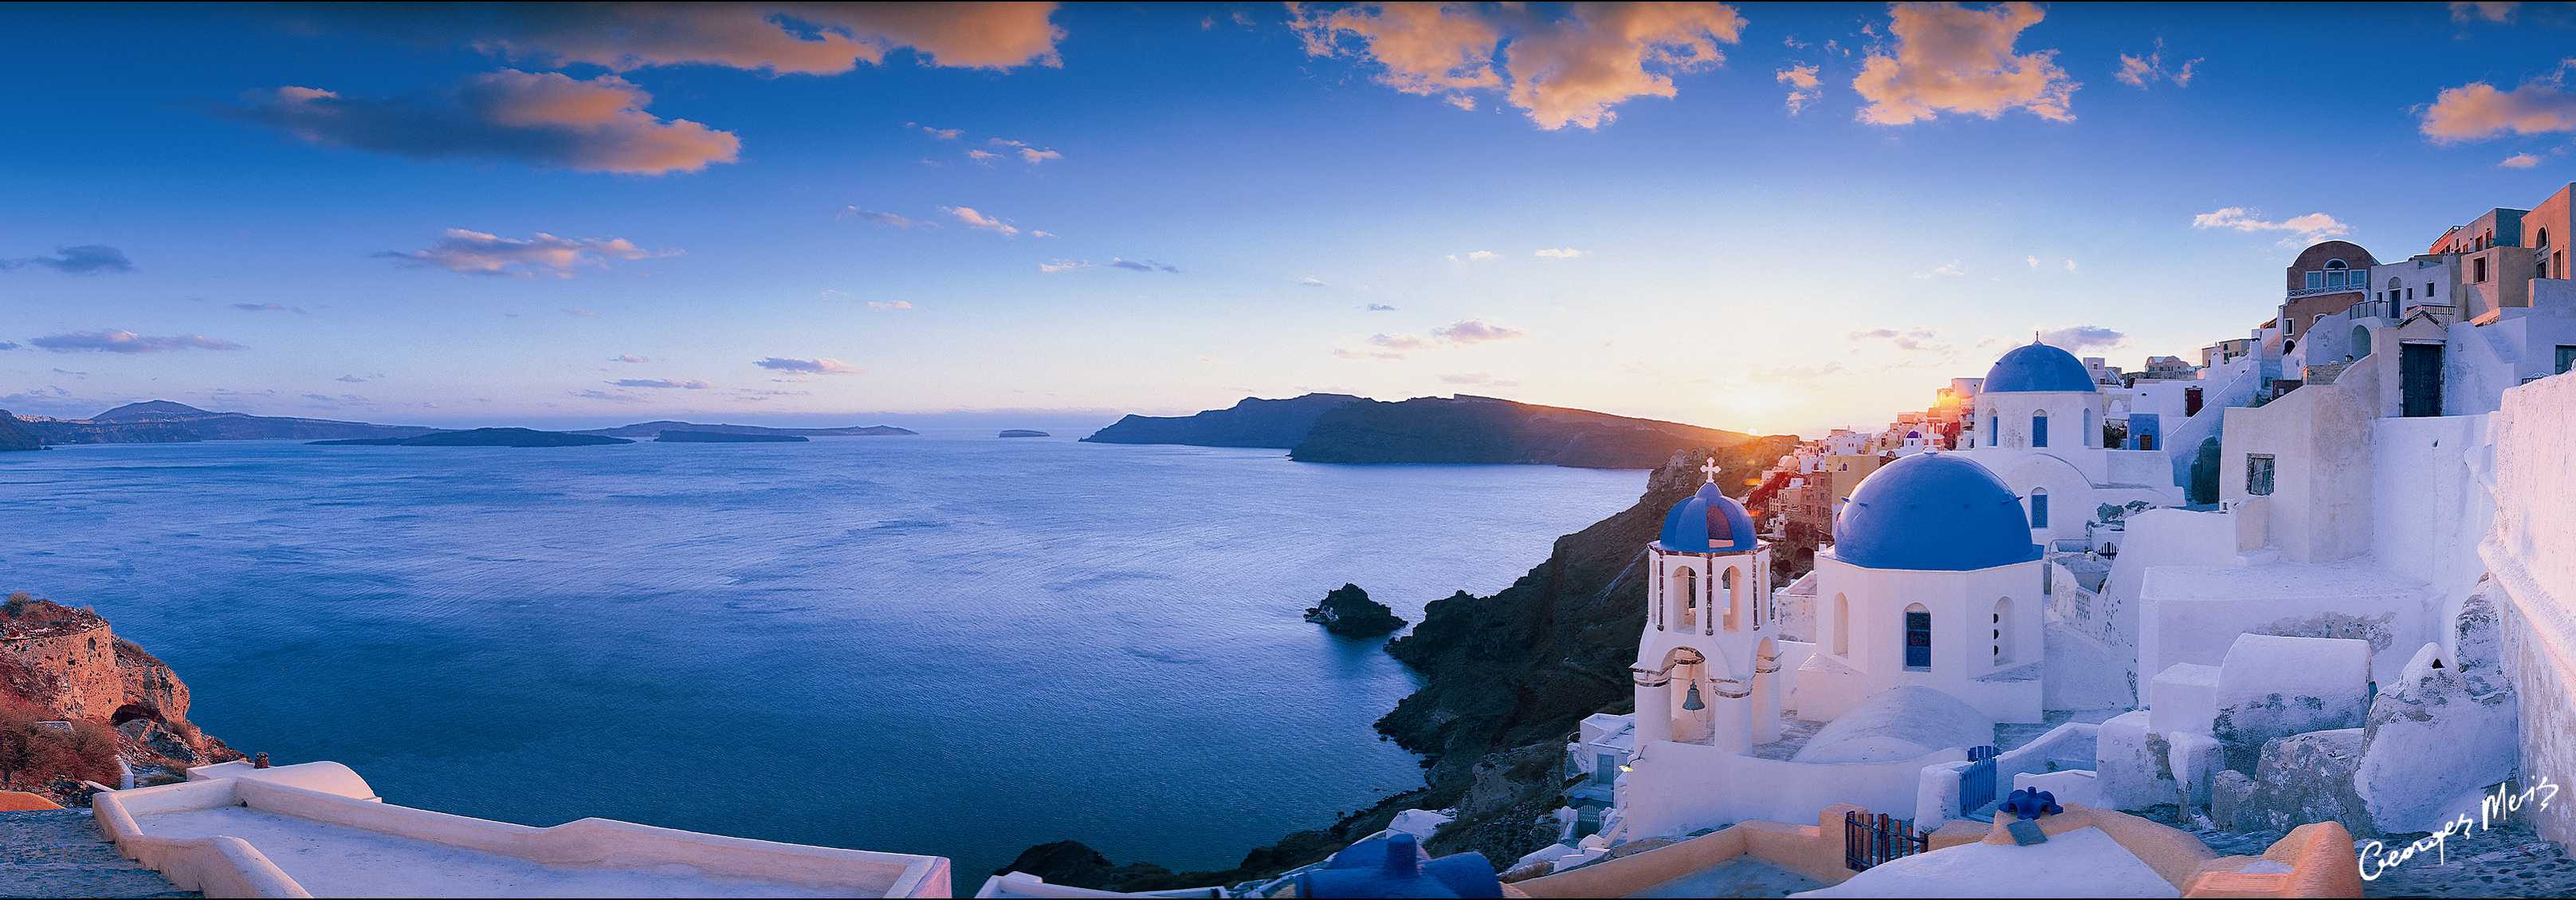 Hãy chiêm ngưỡng vẻ đẹp hoang sơ, lãng mạn của Santorini, Hy Lạp. Hiện diện trầm mặc của những ngôi nhà trắng cùng những bãi biển tuyệt đẹp sẽ đưa bạn đến một thiên đường hoang sơ. Từ trên cao, tận hưởng khung cảnh toàn cảnh đầy hun hút này và thưởng thức những giây phút thư giãn tới hạn với cảnh quan đáng nhớ này.